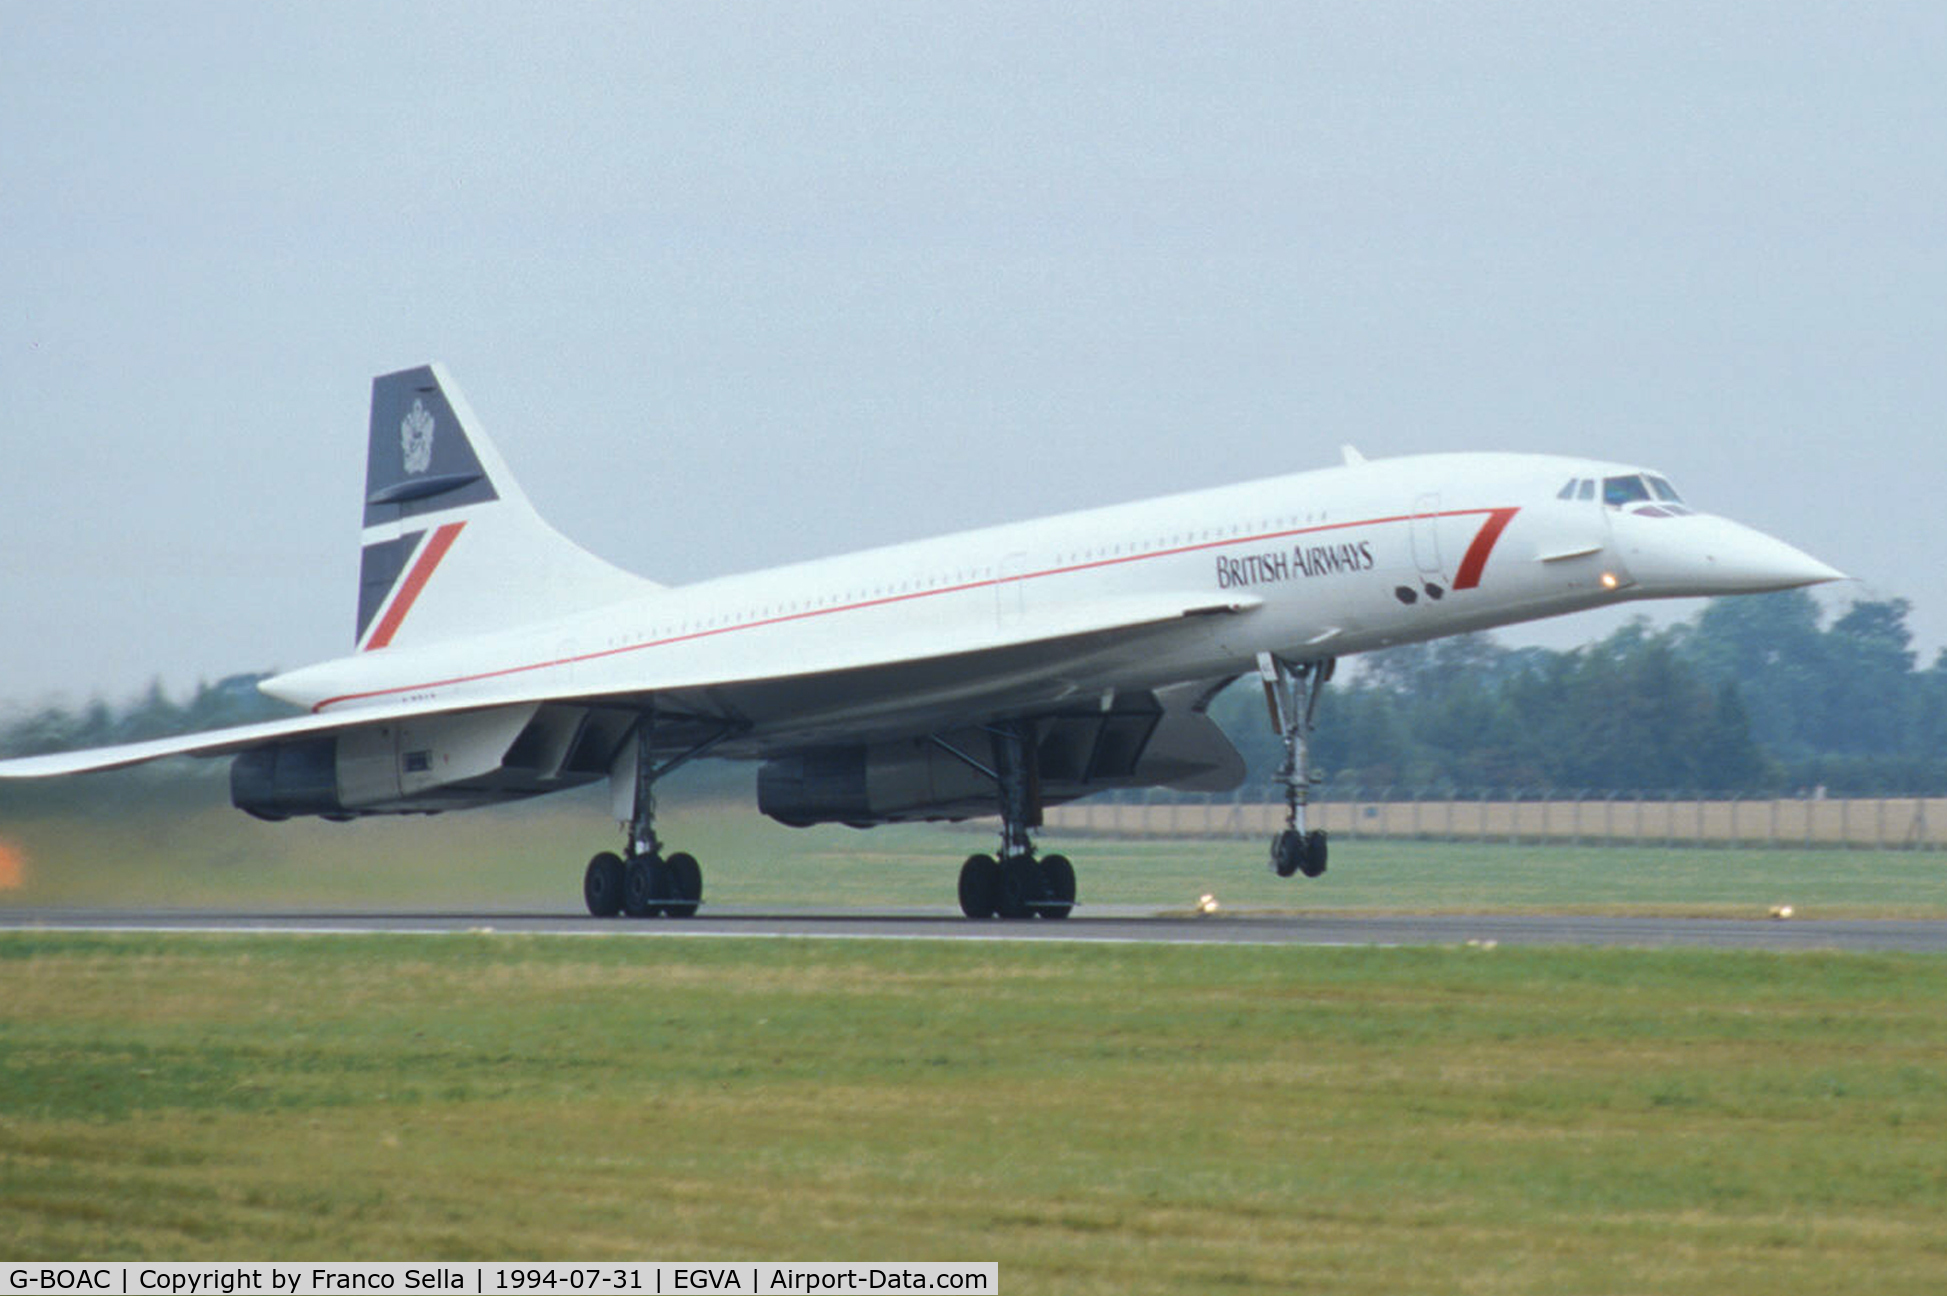 G-BOAC, 1975 Aerospatiale-BAC Concorde 1-102 C/N 100-004, British Airways Aerospatiale BAC Concorde G-BOAC at the 1994 Royal International Air Tattoo, Fairford UK